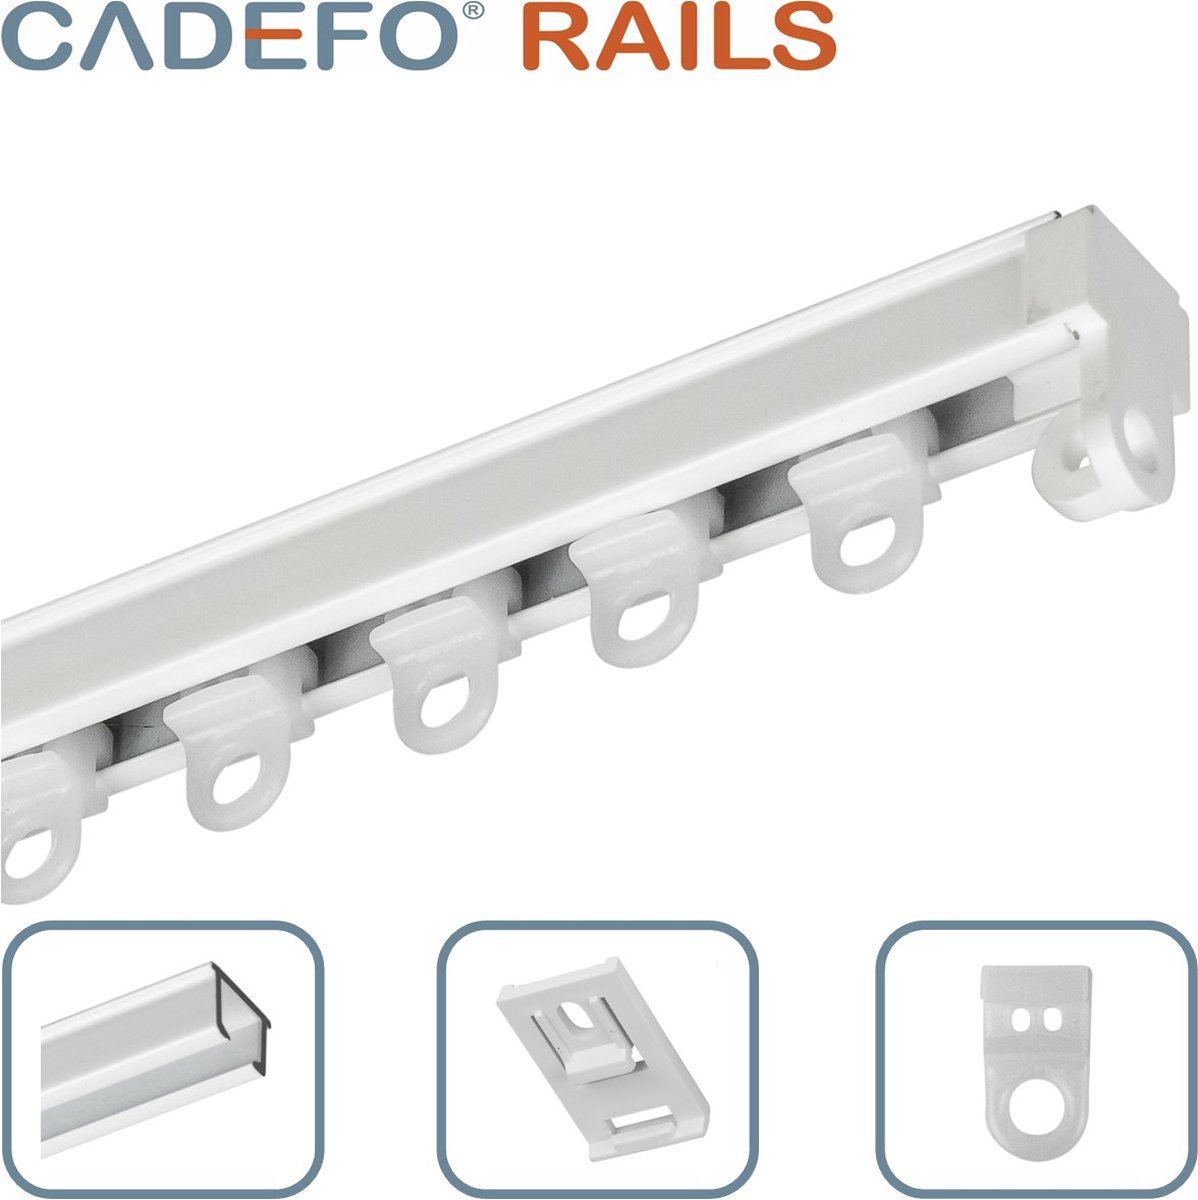 CADEFO RAILS (451 - 500 cm) Gordijnrails - Compleet op maat! - UIT 1 STUK - Leverbaar tot 6 meter - Plafondbevestiging - Lengte 471 cm